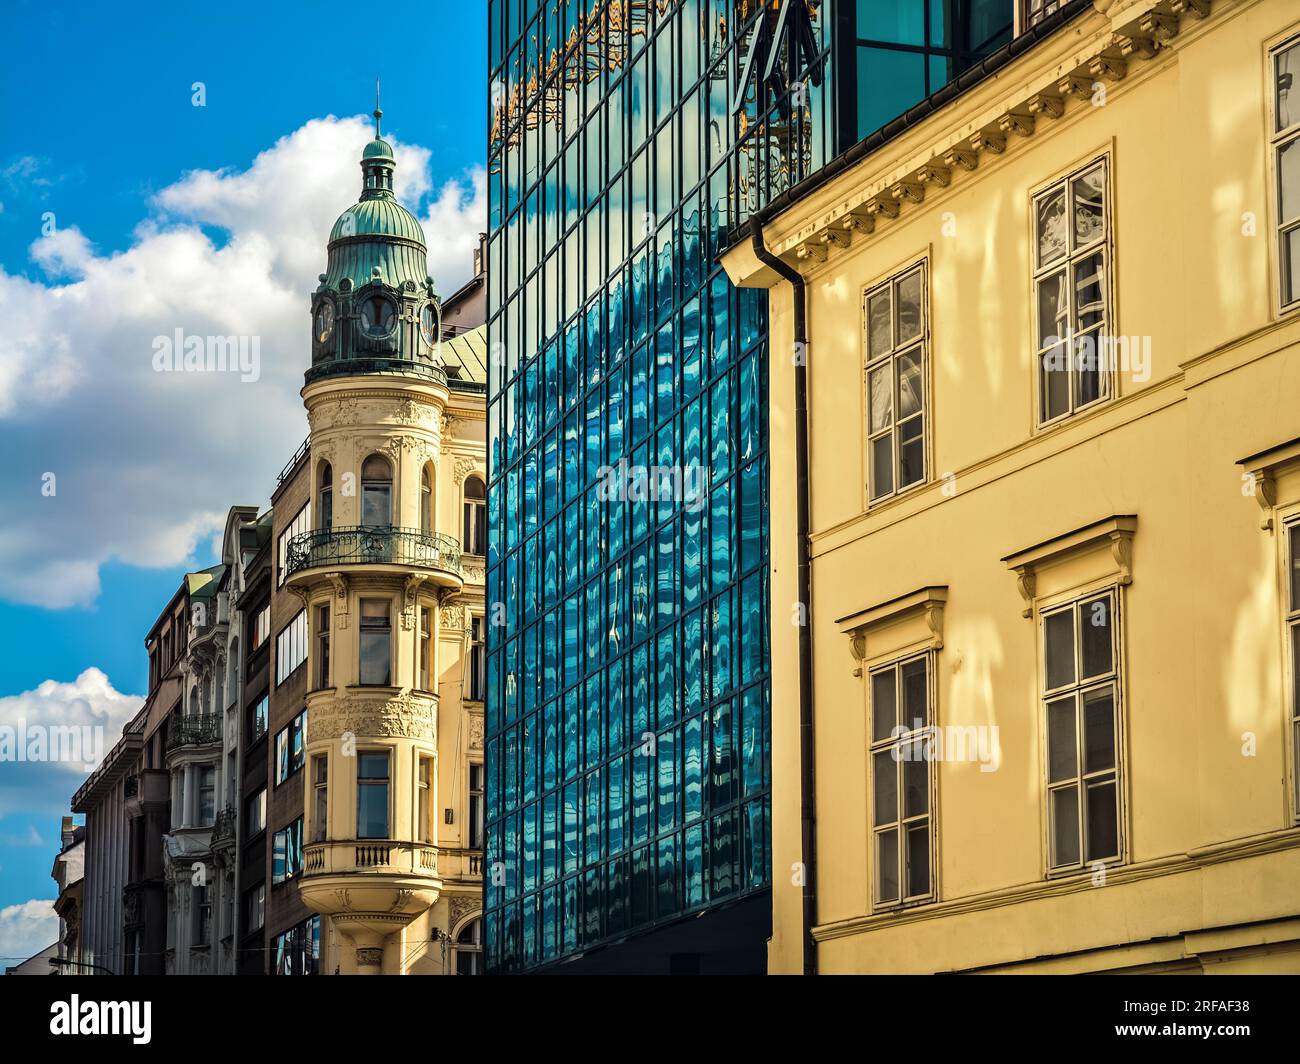 Vista dei vecchi edifici storici e moderni in vetro fianco a fianco a Praga, Repubblica Ceca. Foto Stock